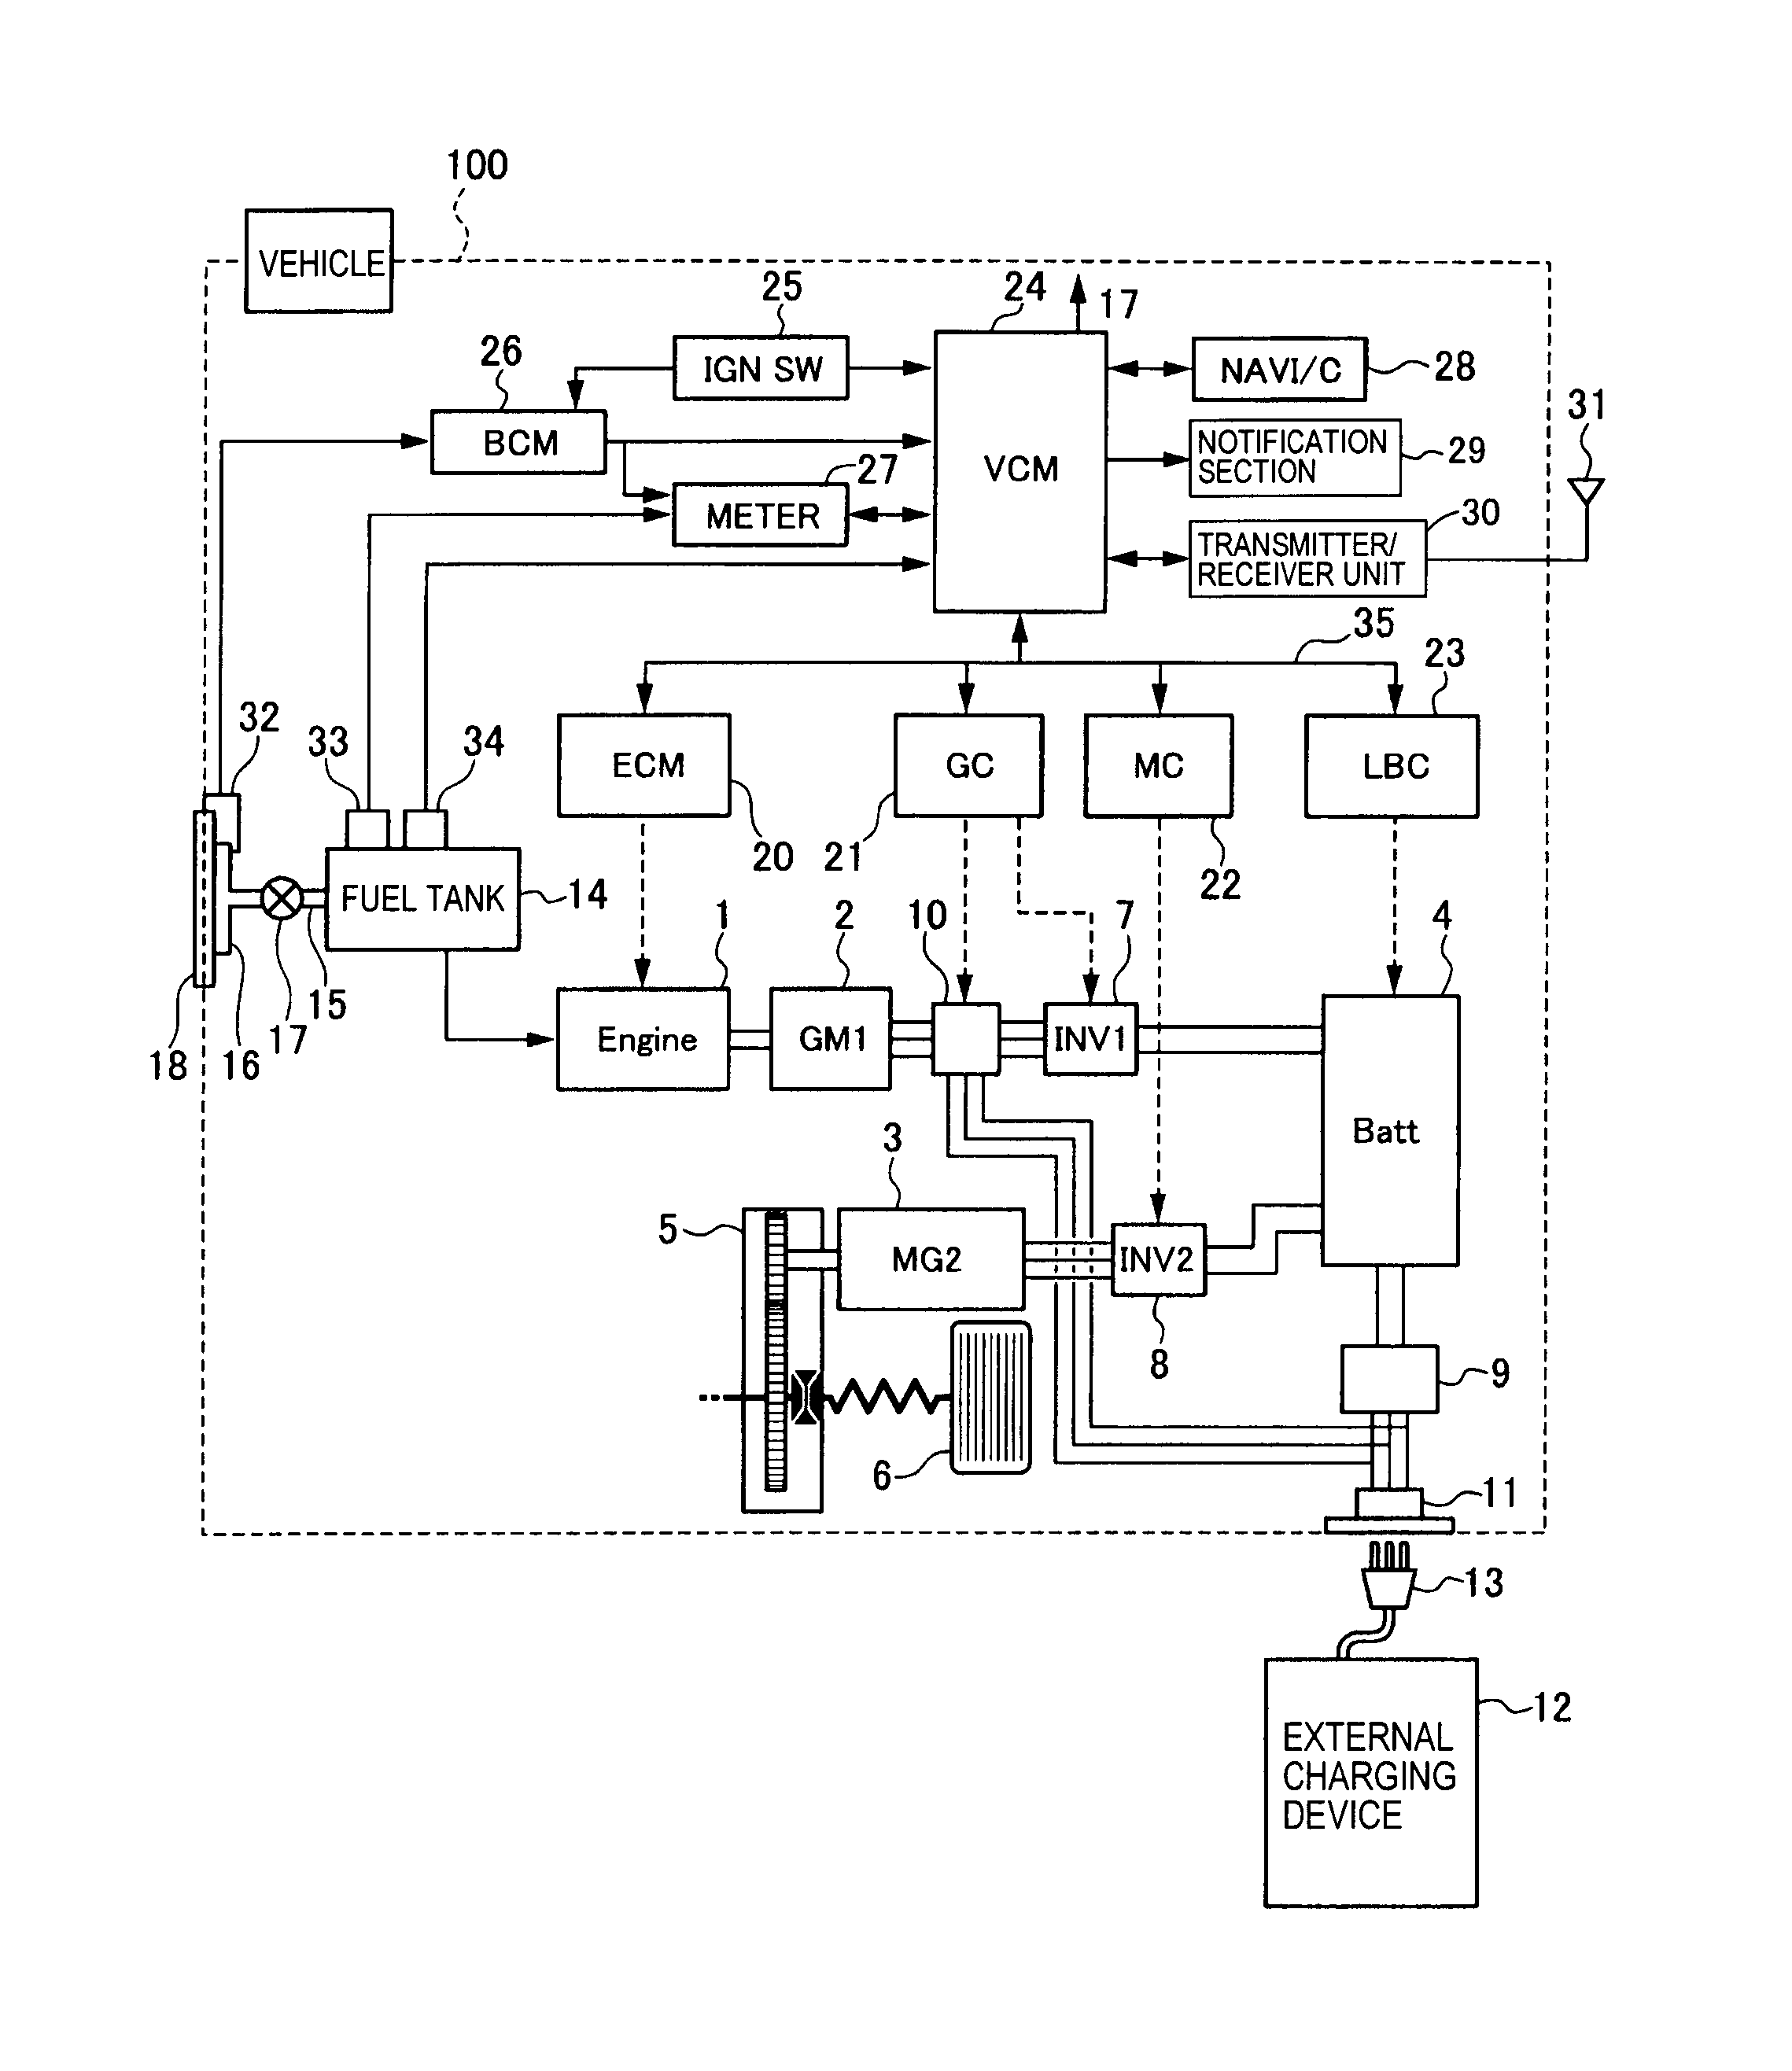 toro ignition switch ssw2840 wiring diagram